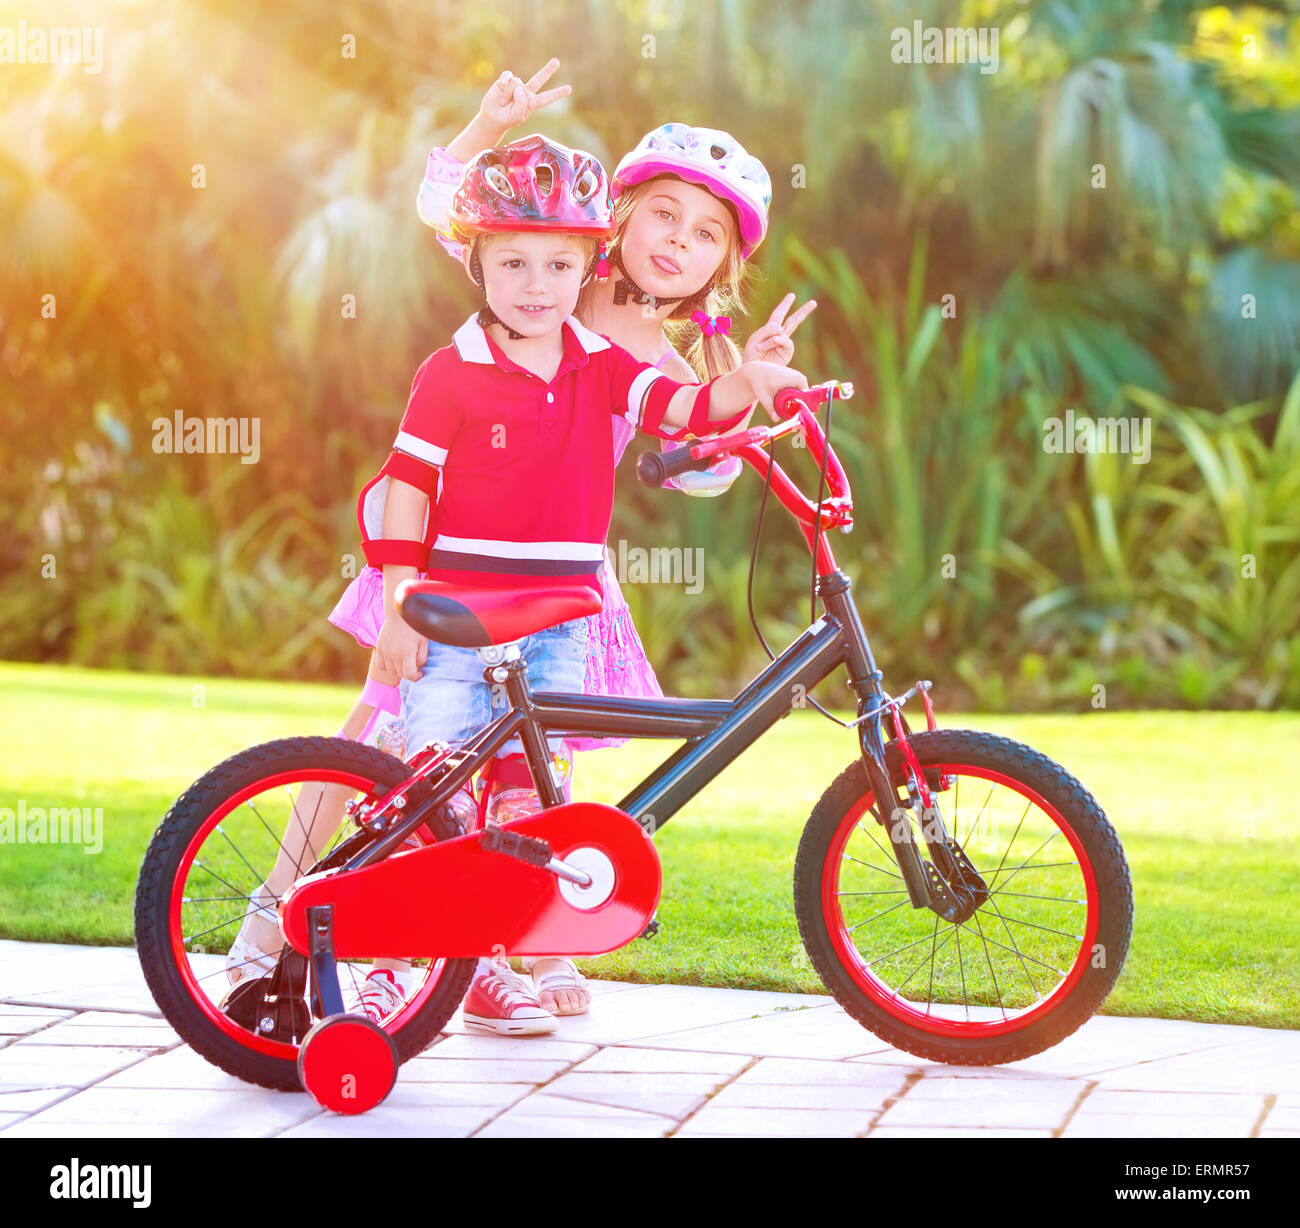 Enfants jouant dans le parc, cheerful frère et sœur s'amusant sur location, profitant de l'heure d'été, heureux de l'enfance active Banque D'Images